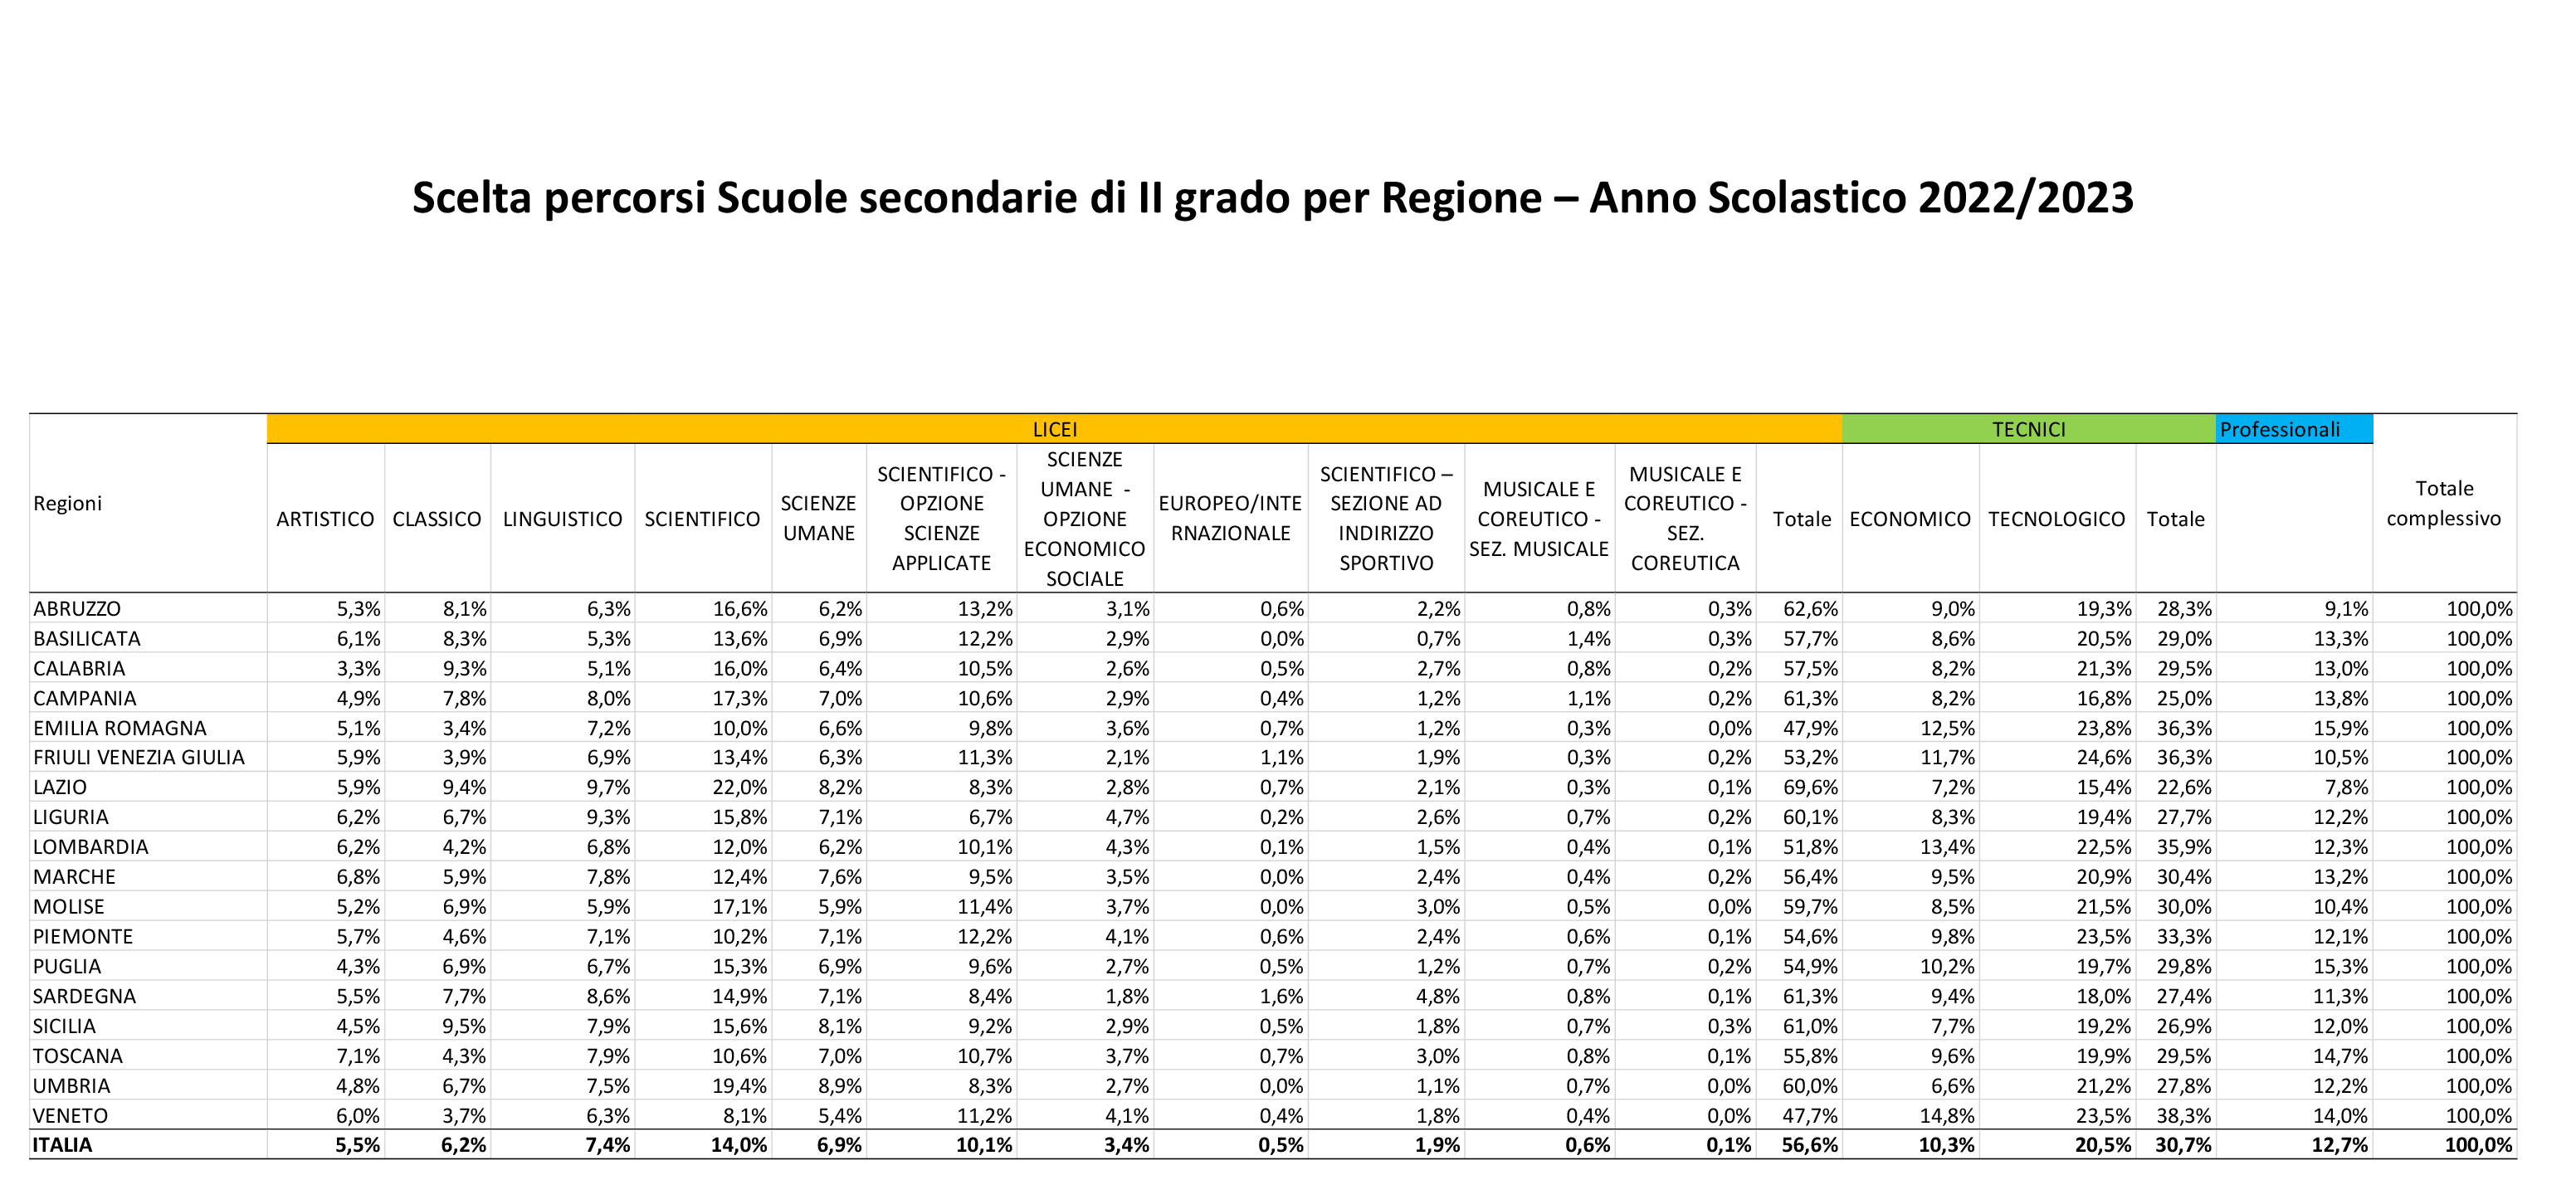 Scelta-percorsi-Scuole-secondarie-di-II-grado-per-Regione-a.s.-2022-2023